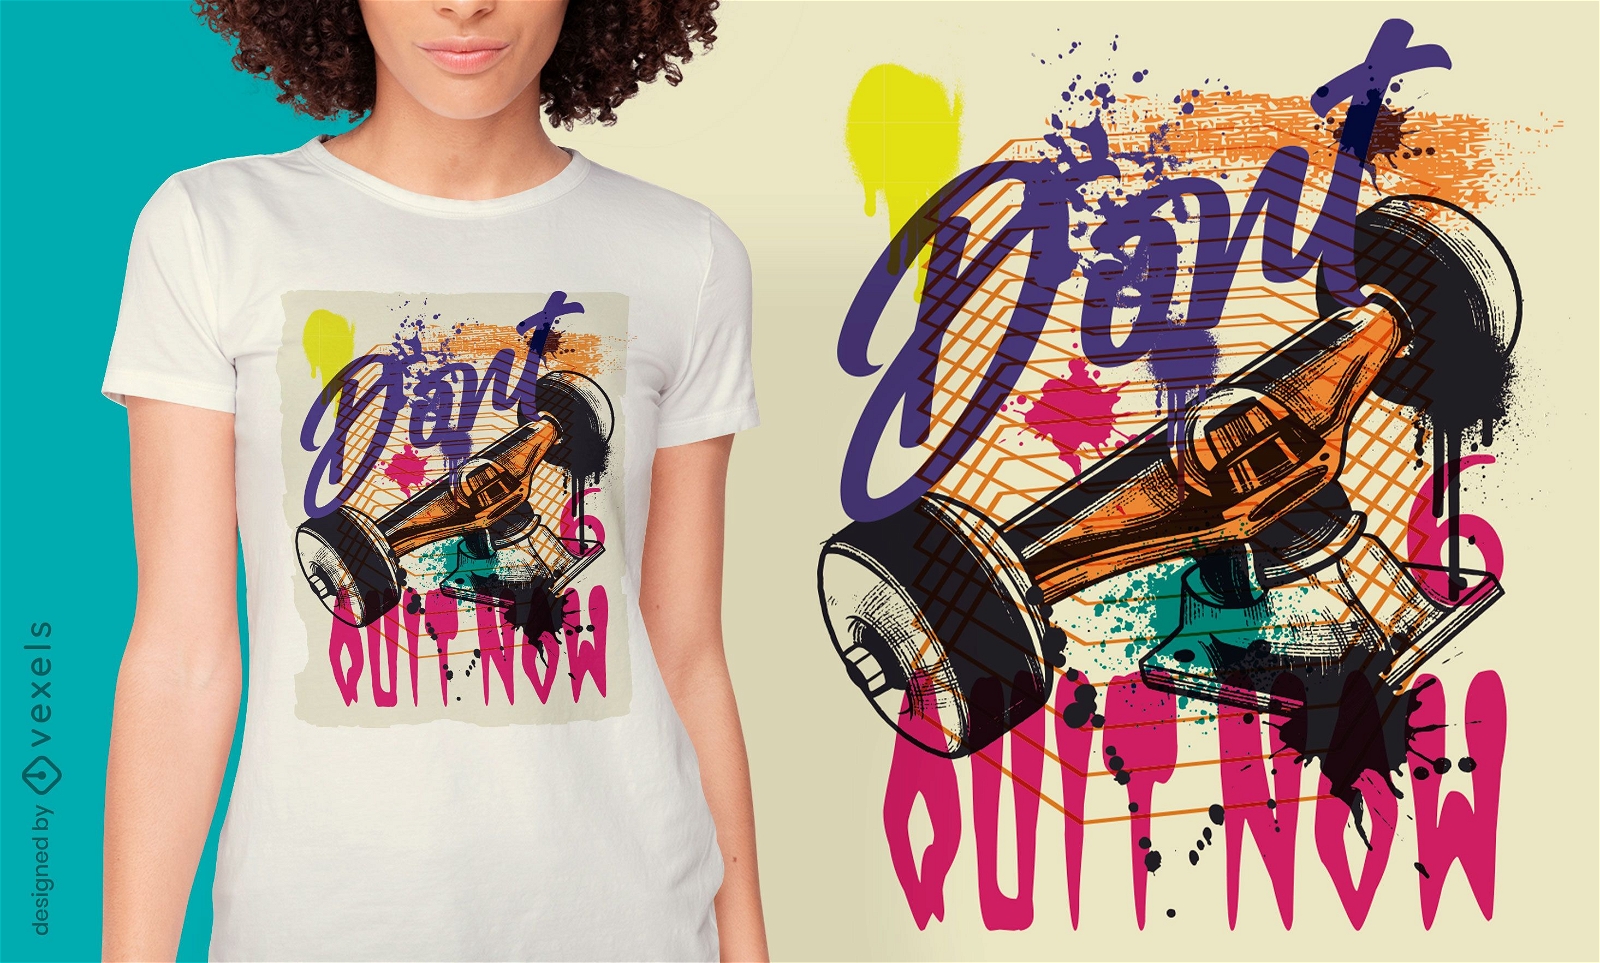 Dise?o de camiseta de graffiti urbano de skate truck.